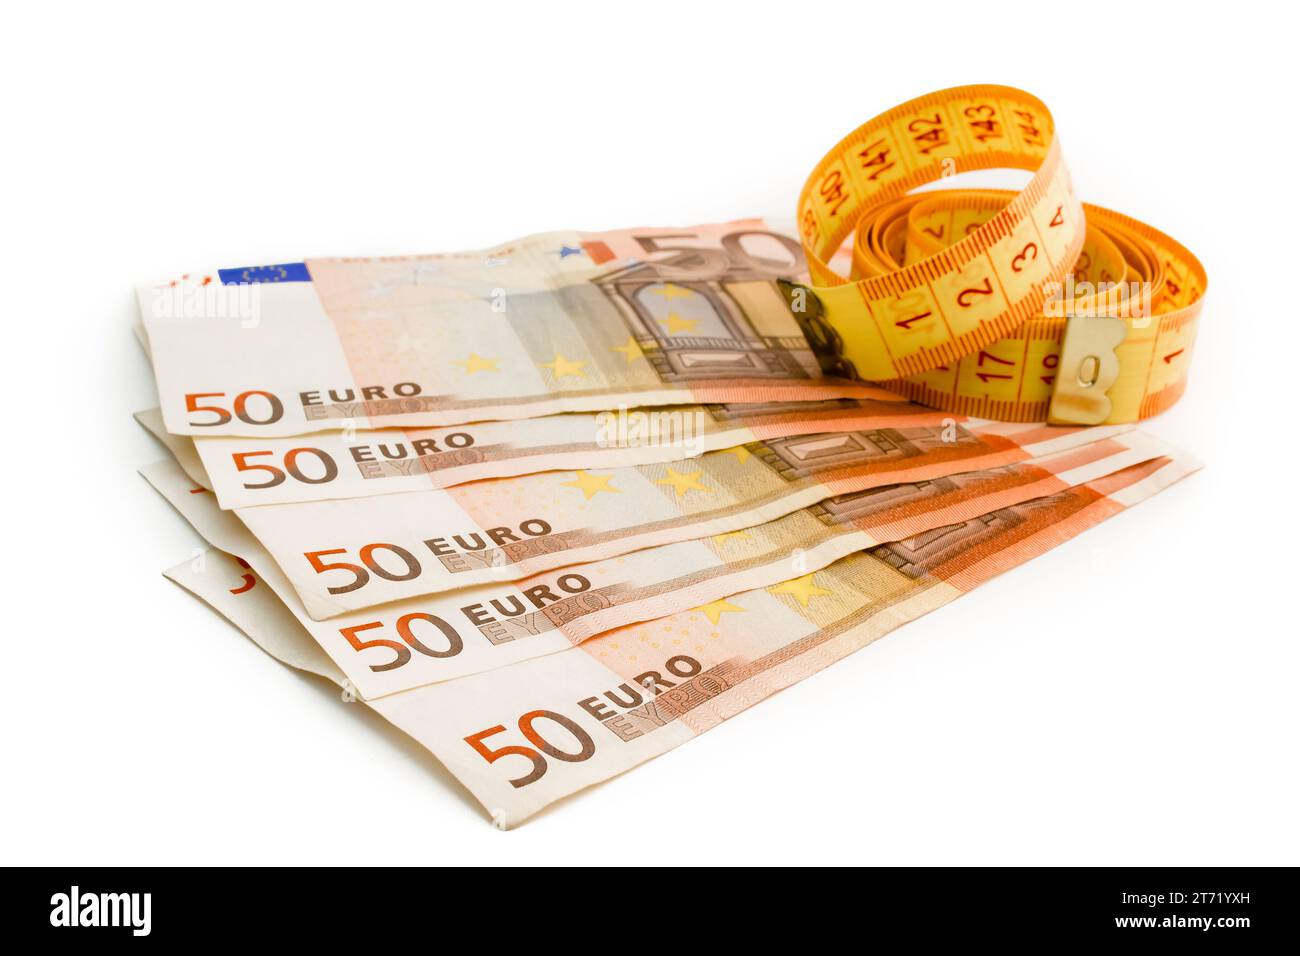 dettaglio delle banconote in euro usate e nastro di misurazione su fondo bianco; dettaglio delle banconote in euro usate e nastro di misurazione su fondo bianco Foto Stock